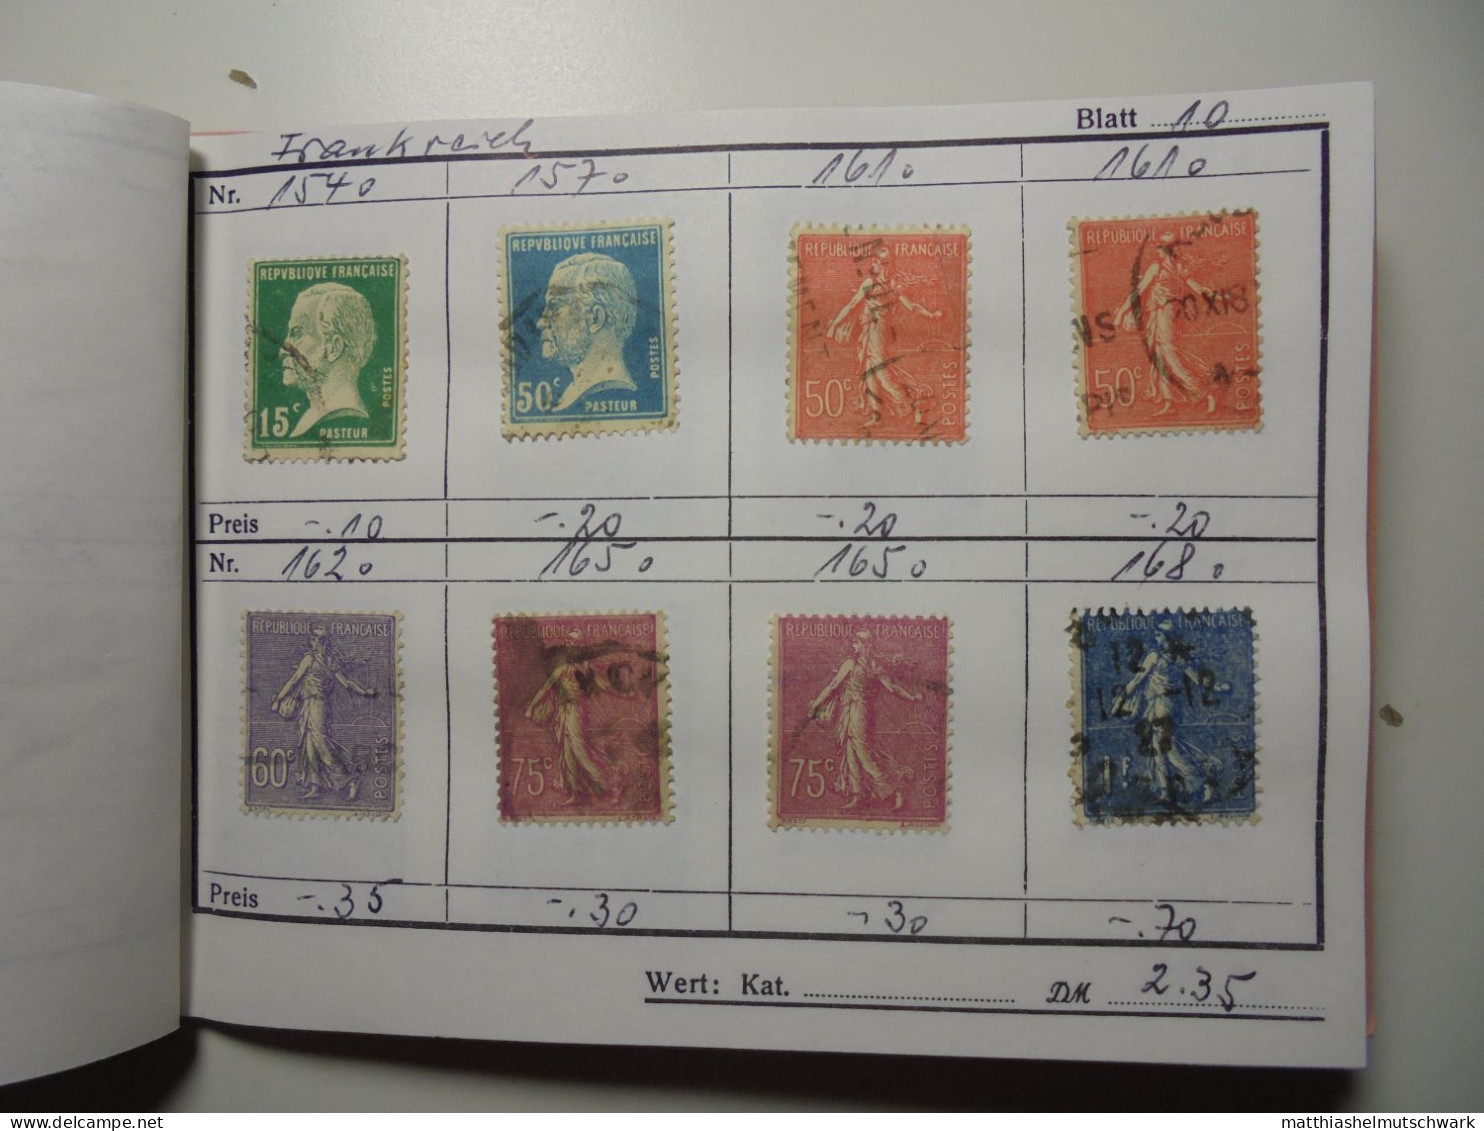 Auswahlheft Nr. 442 22 Blätter a 8 Briefmarken 176 Briefmarken  Frankreich ca. 1868-1936/Mi Nr. 21 a-30